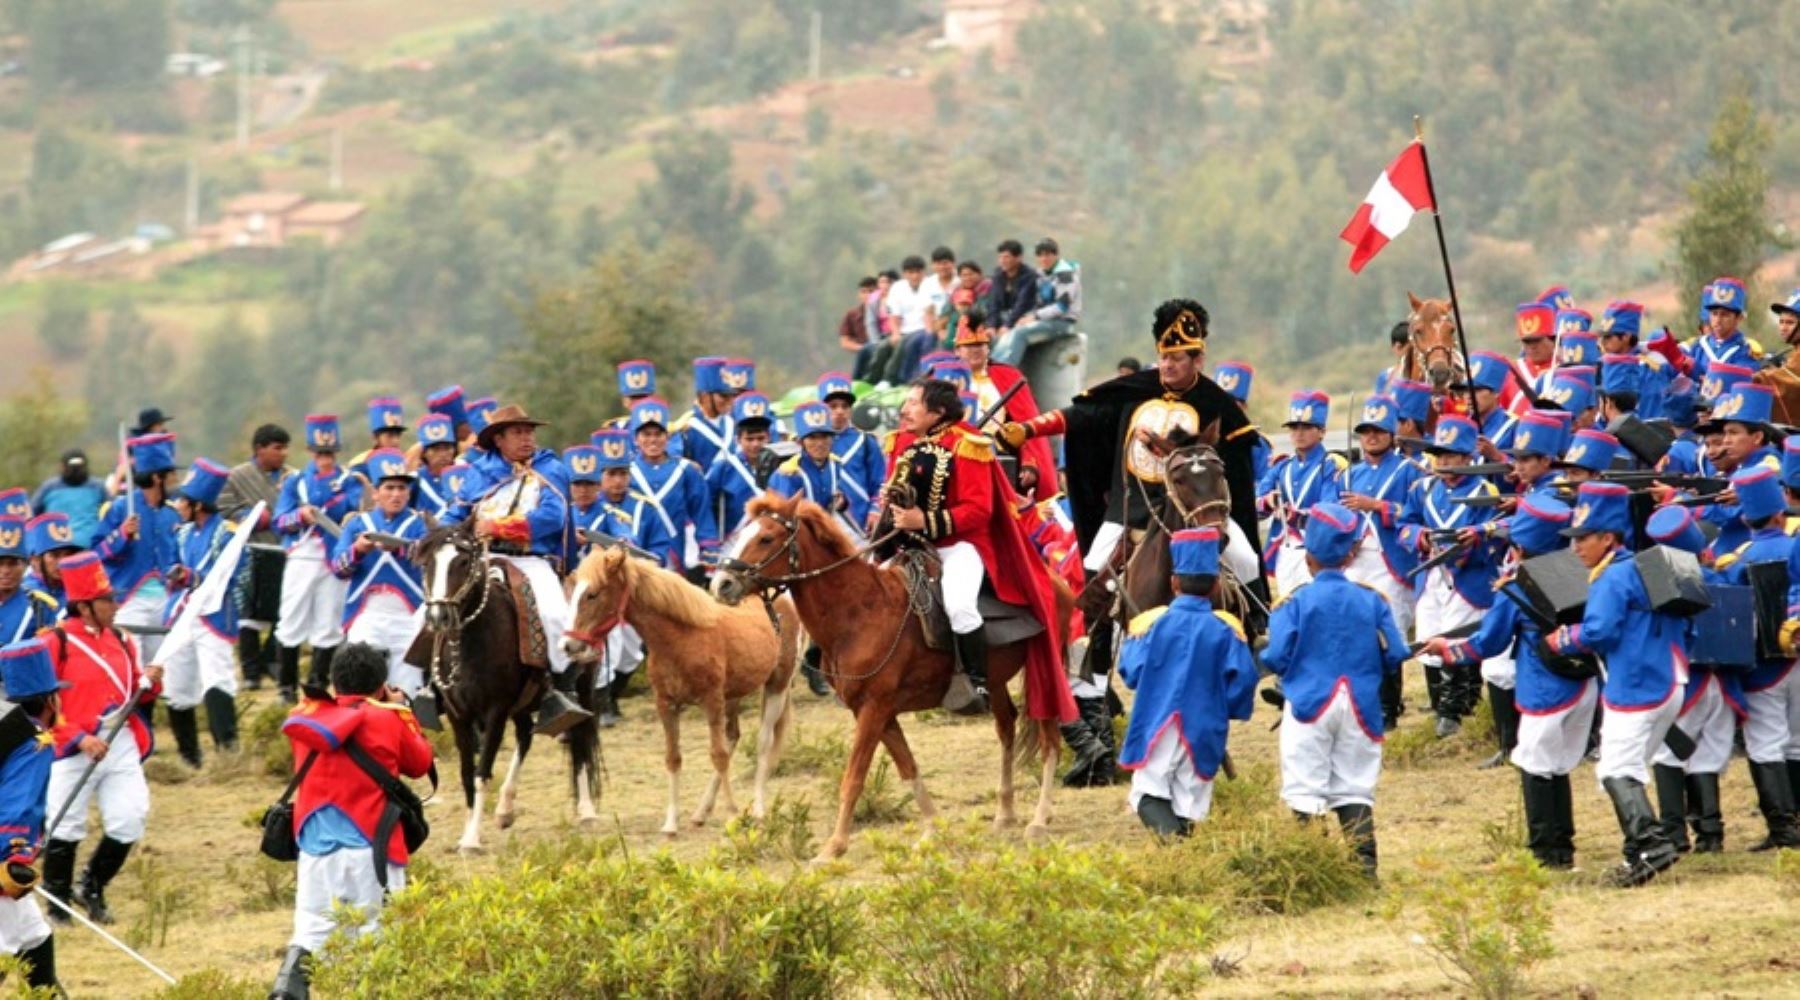 Para mañana se han programado ceremonias protocolares y el desfile por el aniversario del Ejército Peruano, en el Santuario Histórico de la Pampa de la Quinua, distrito de Quinua. A las 08:00 horas se realizará la misa tedeum y luego la Parada Militar en la Plaza Mayor de Ayacucho. ANDINA/Difusión